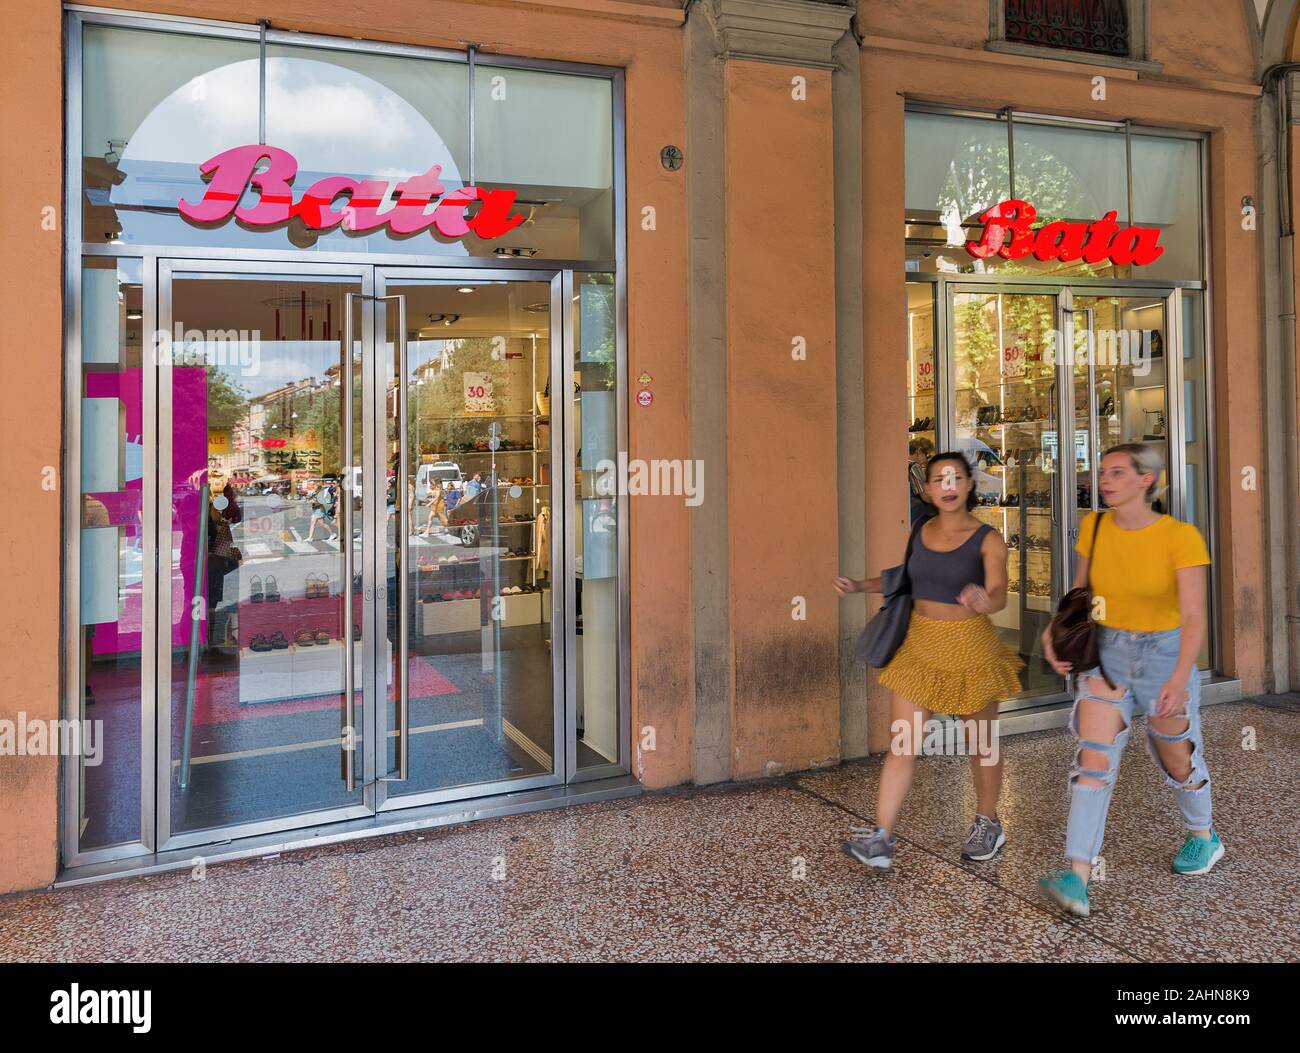 BOLOGNA, Italia - 10 luglio 2019: la gente visita Negozio Bata sullo shopping Indipendenza Street nella città del centro storico. Bata è una multinazionale e calzature Foto Stock